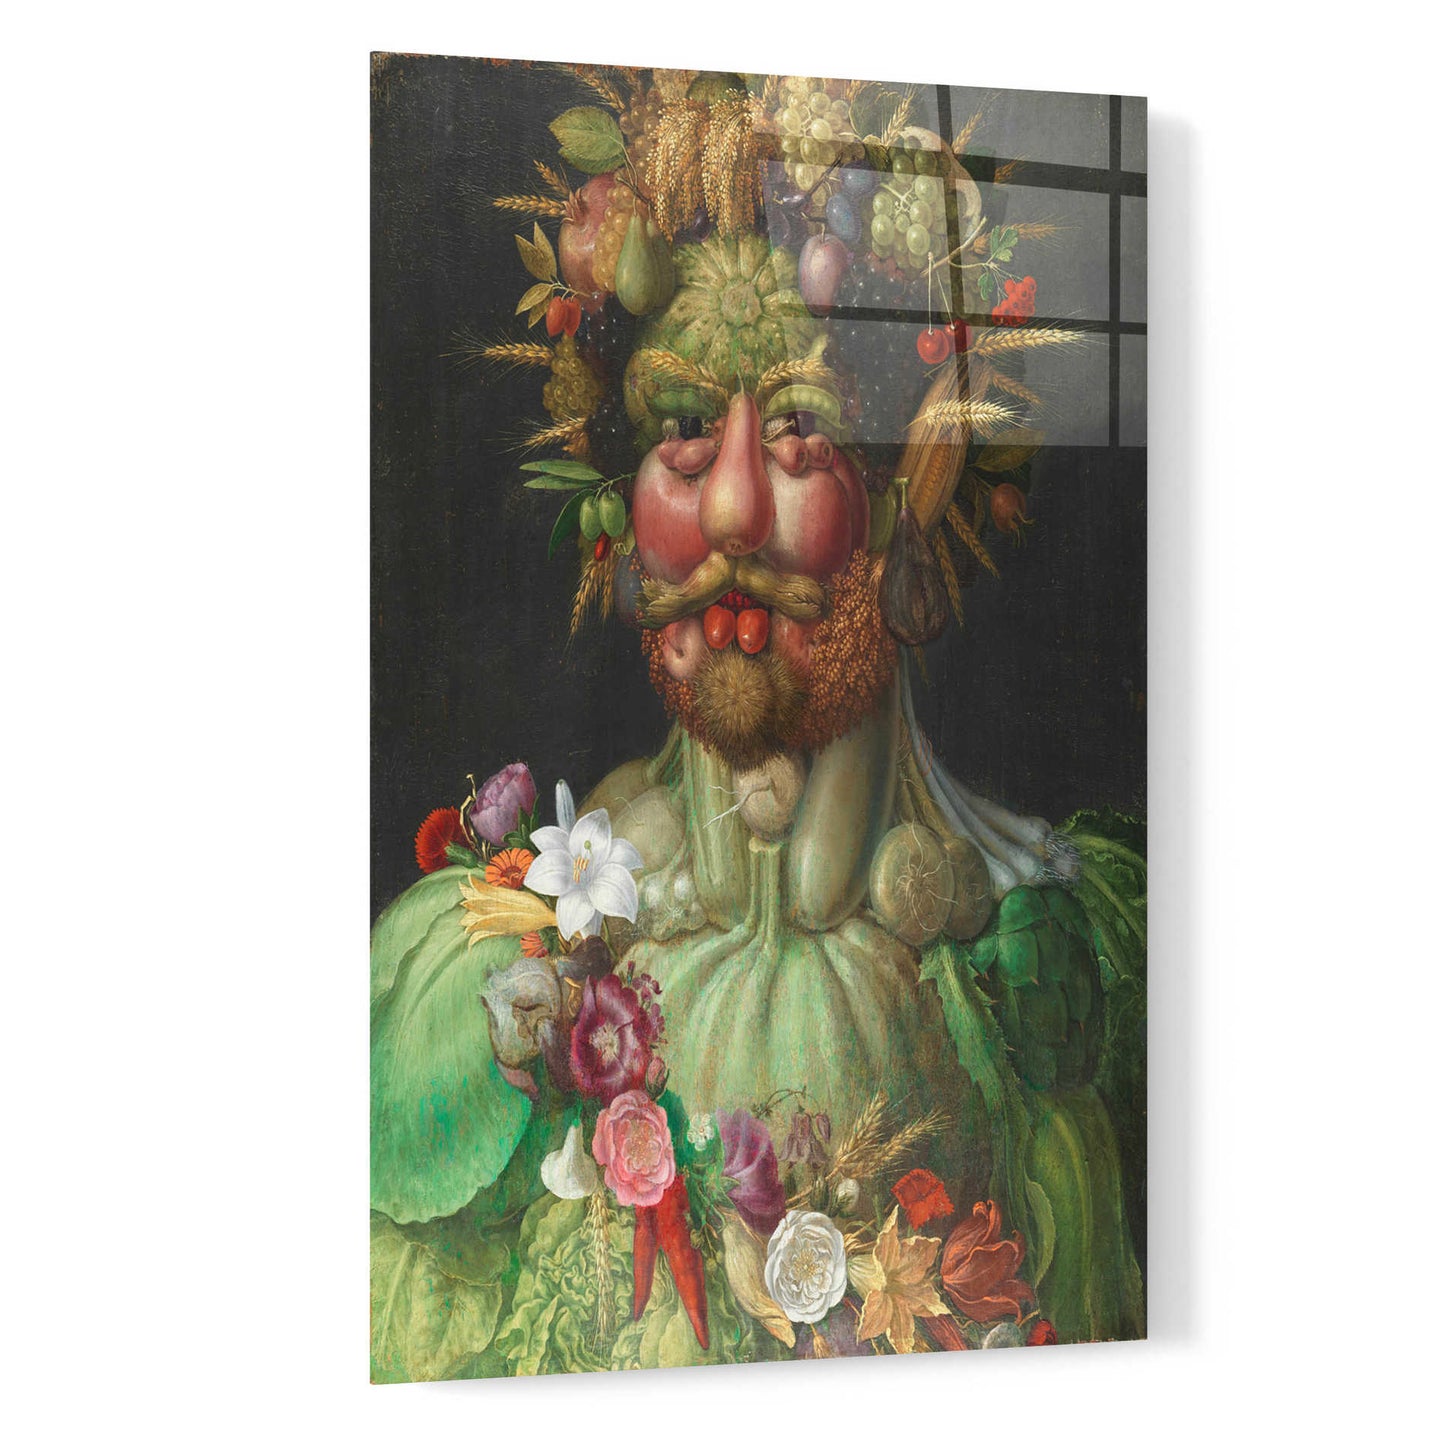 Epic Art 'Vertumnus' by Guiseppe Arcimboldo, Acrylic Glass Wall Art,16x24